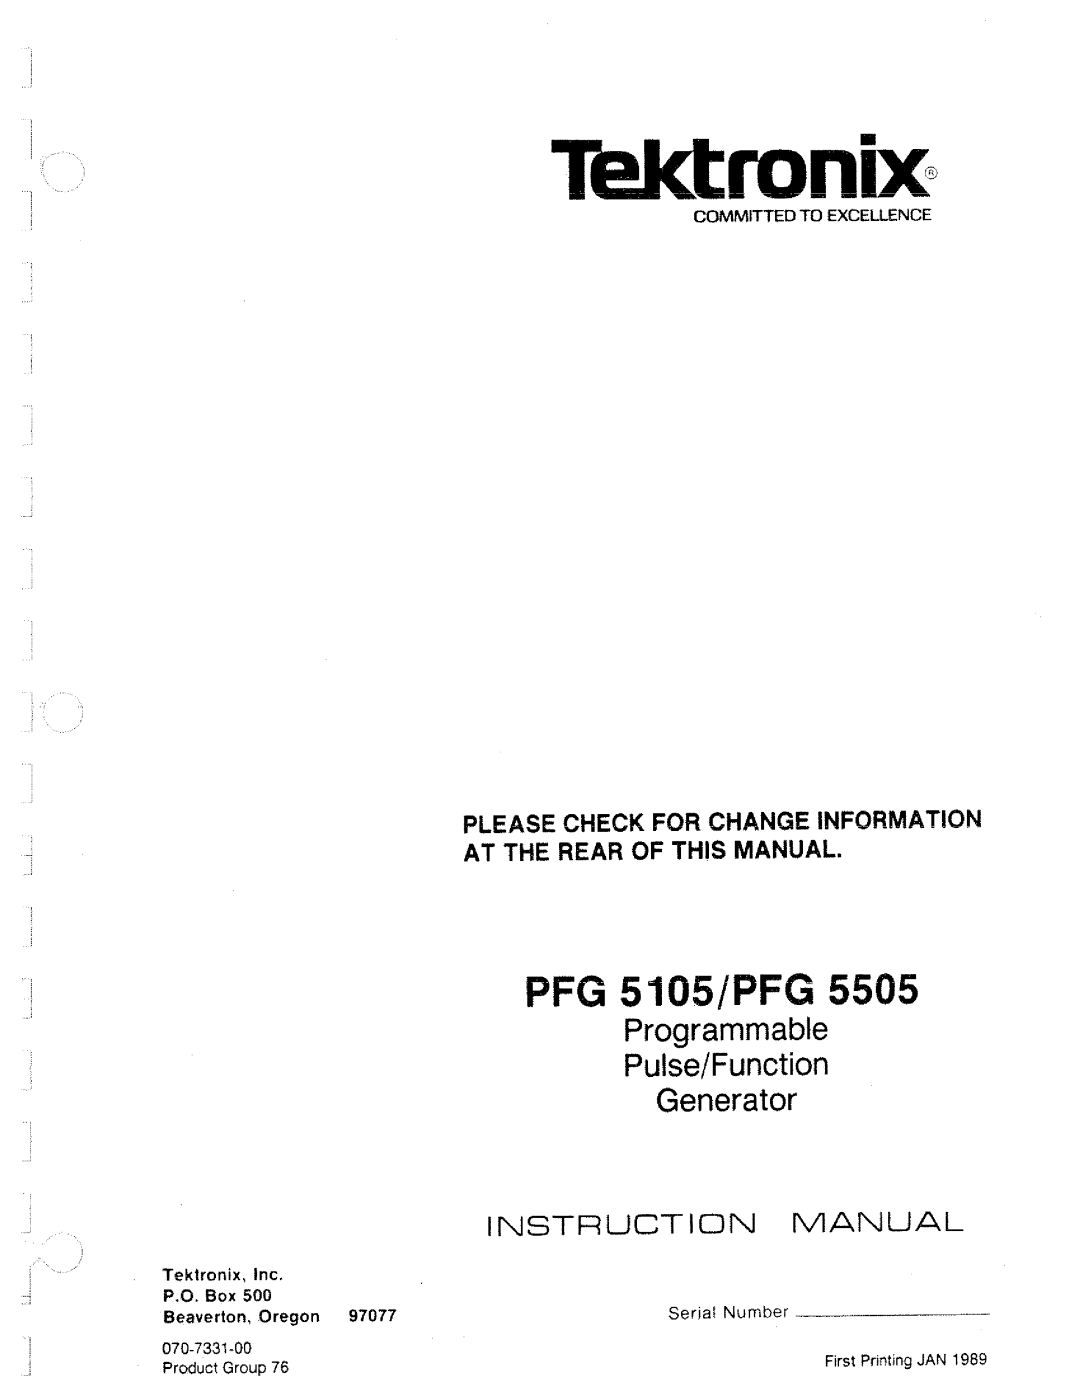 Tektronix 5505, PFG 5105 manual 